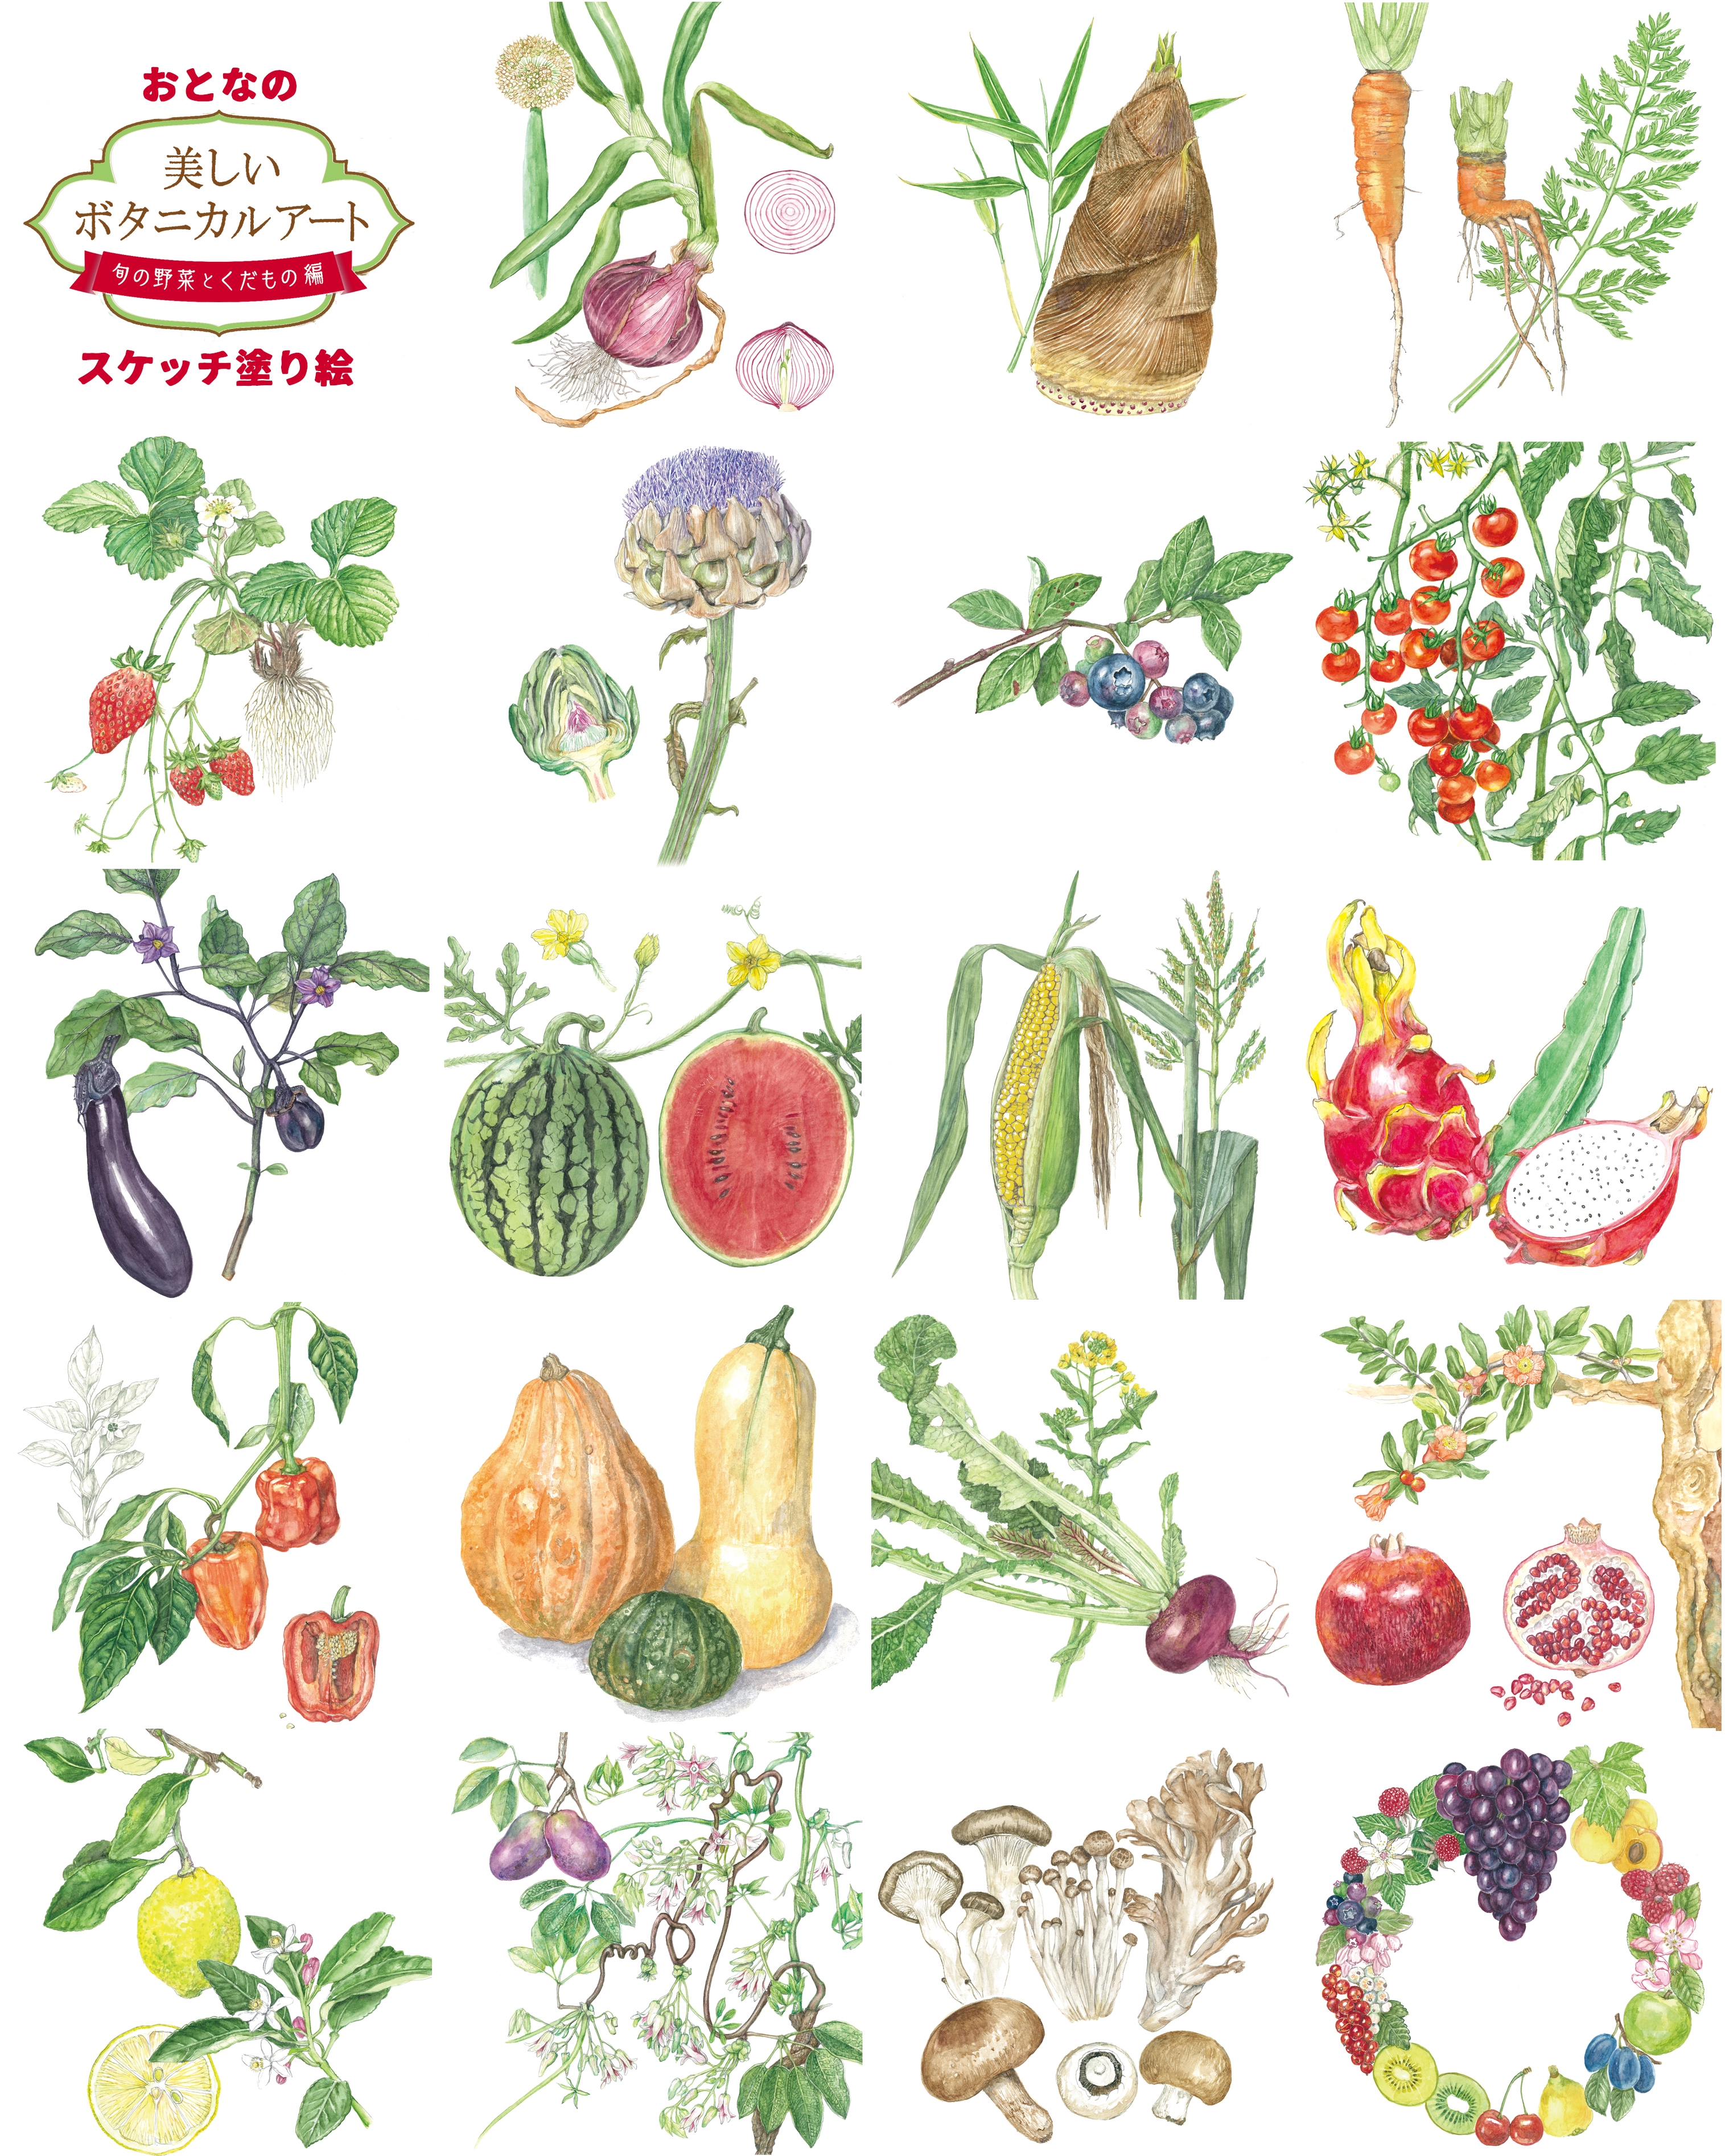 美しいボタニカルアート 旬の野菜とくだもの 中山明子ボタニカルアート ラブアースギャラリー